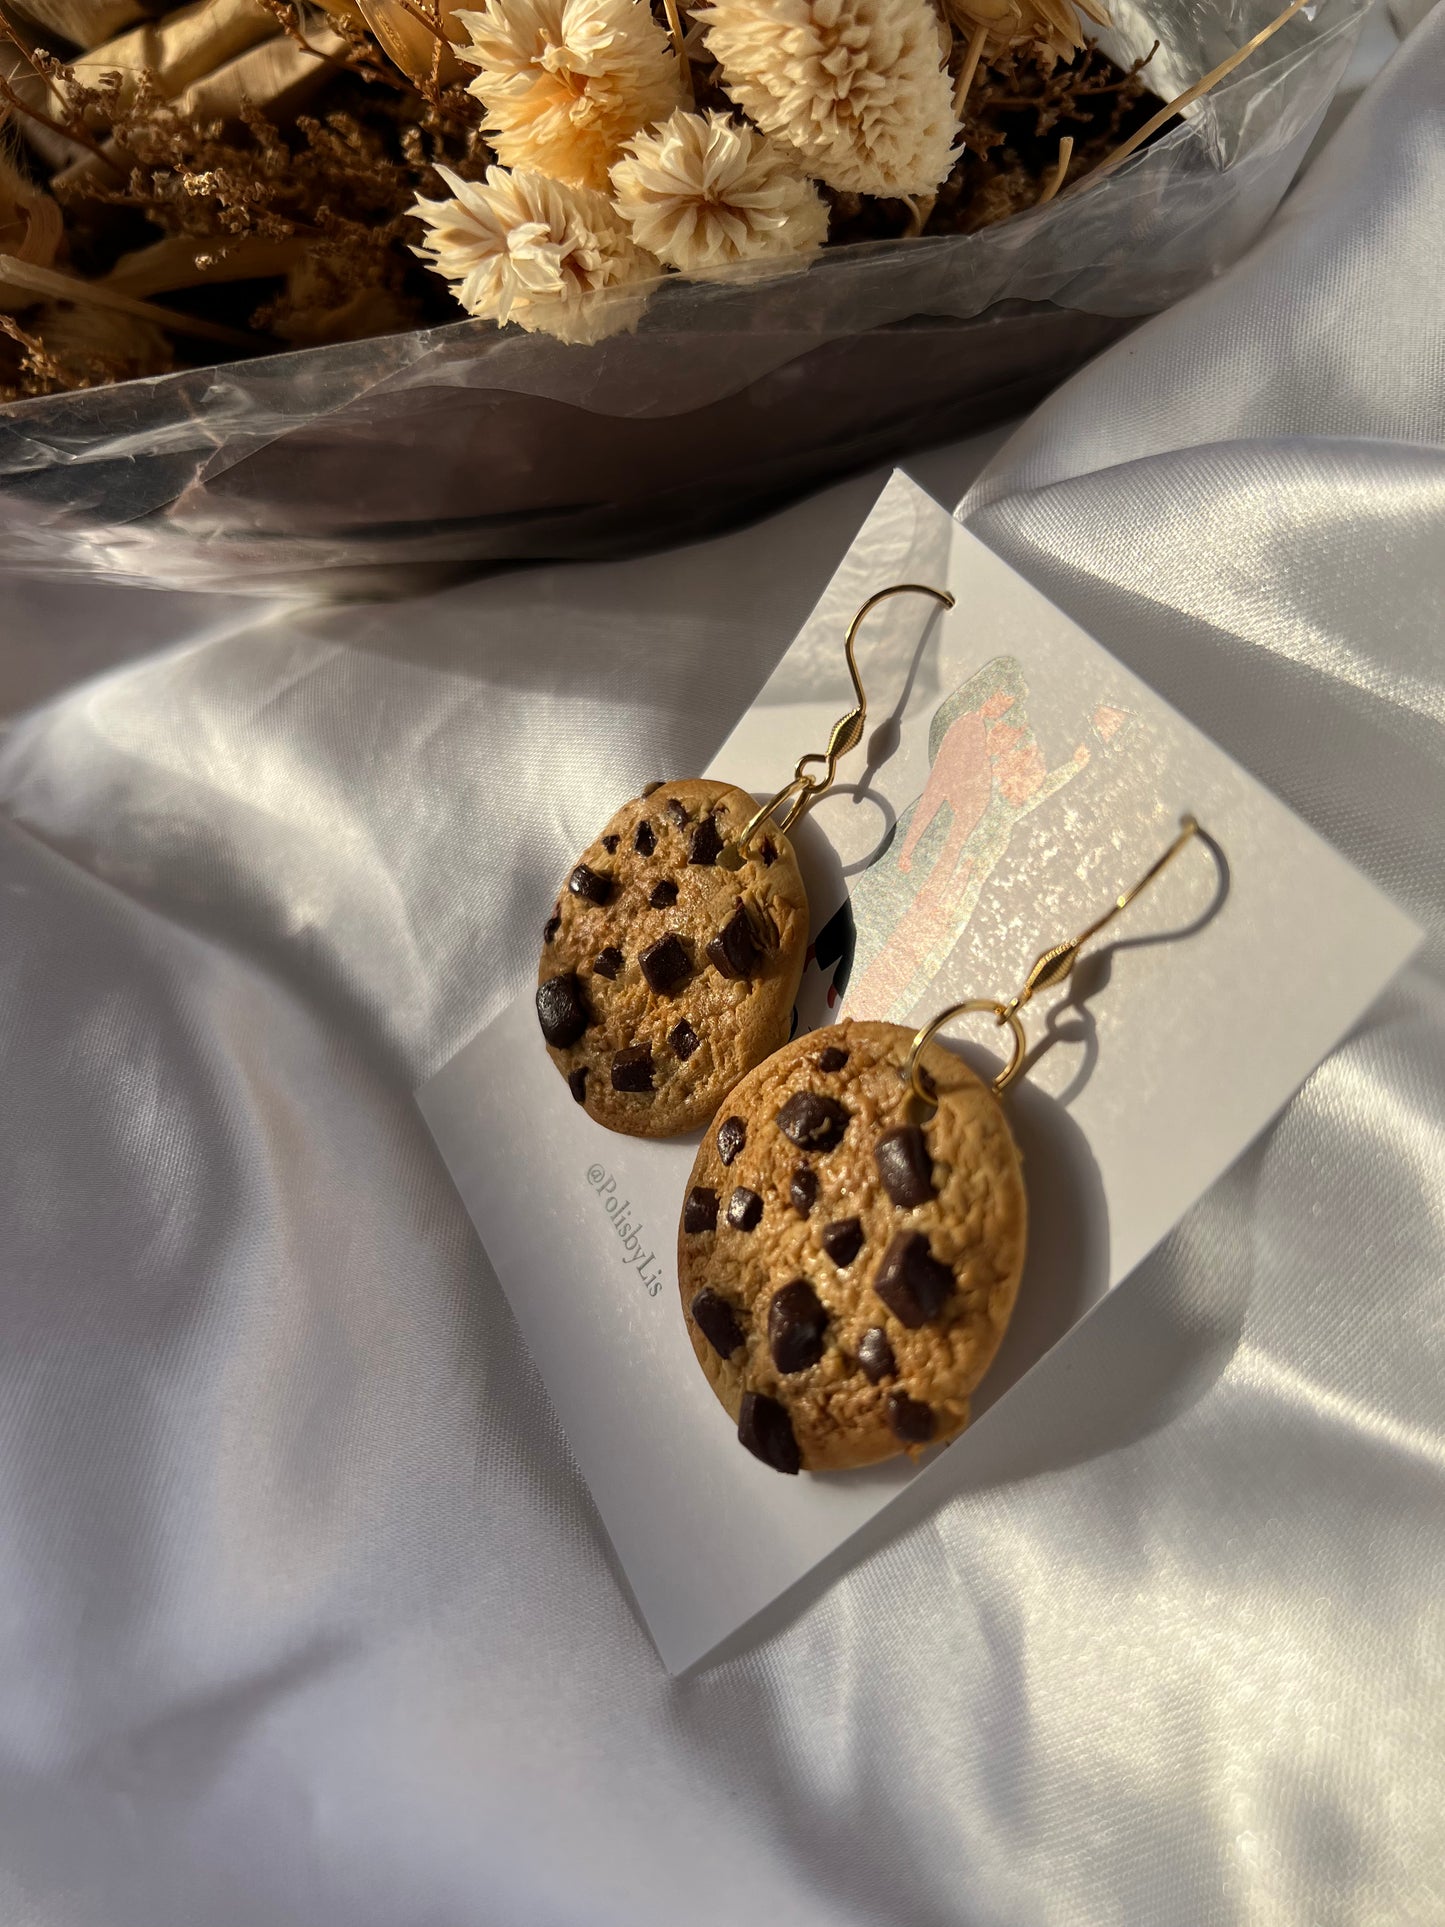 Chocolate chip cookies earrings